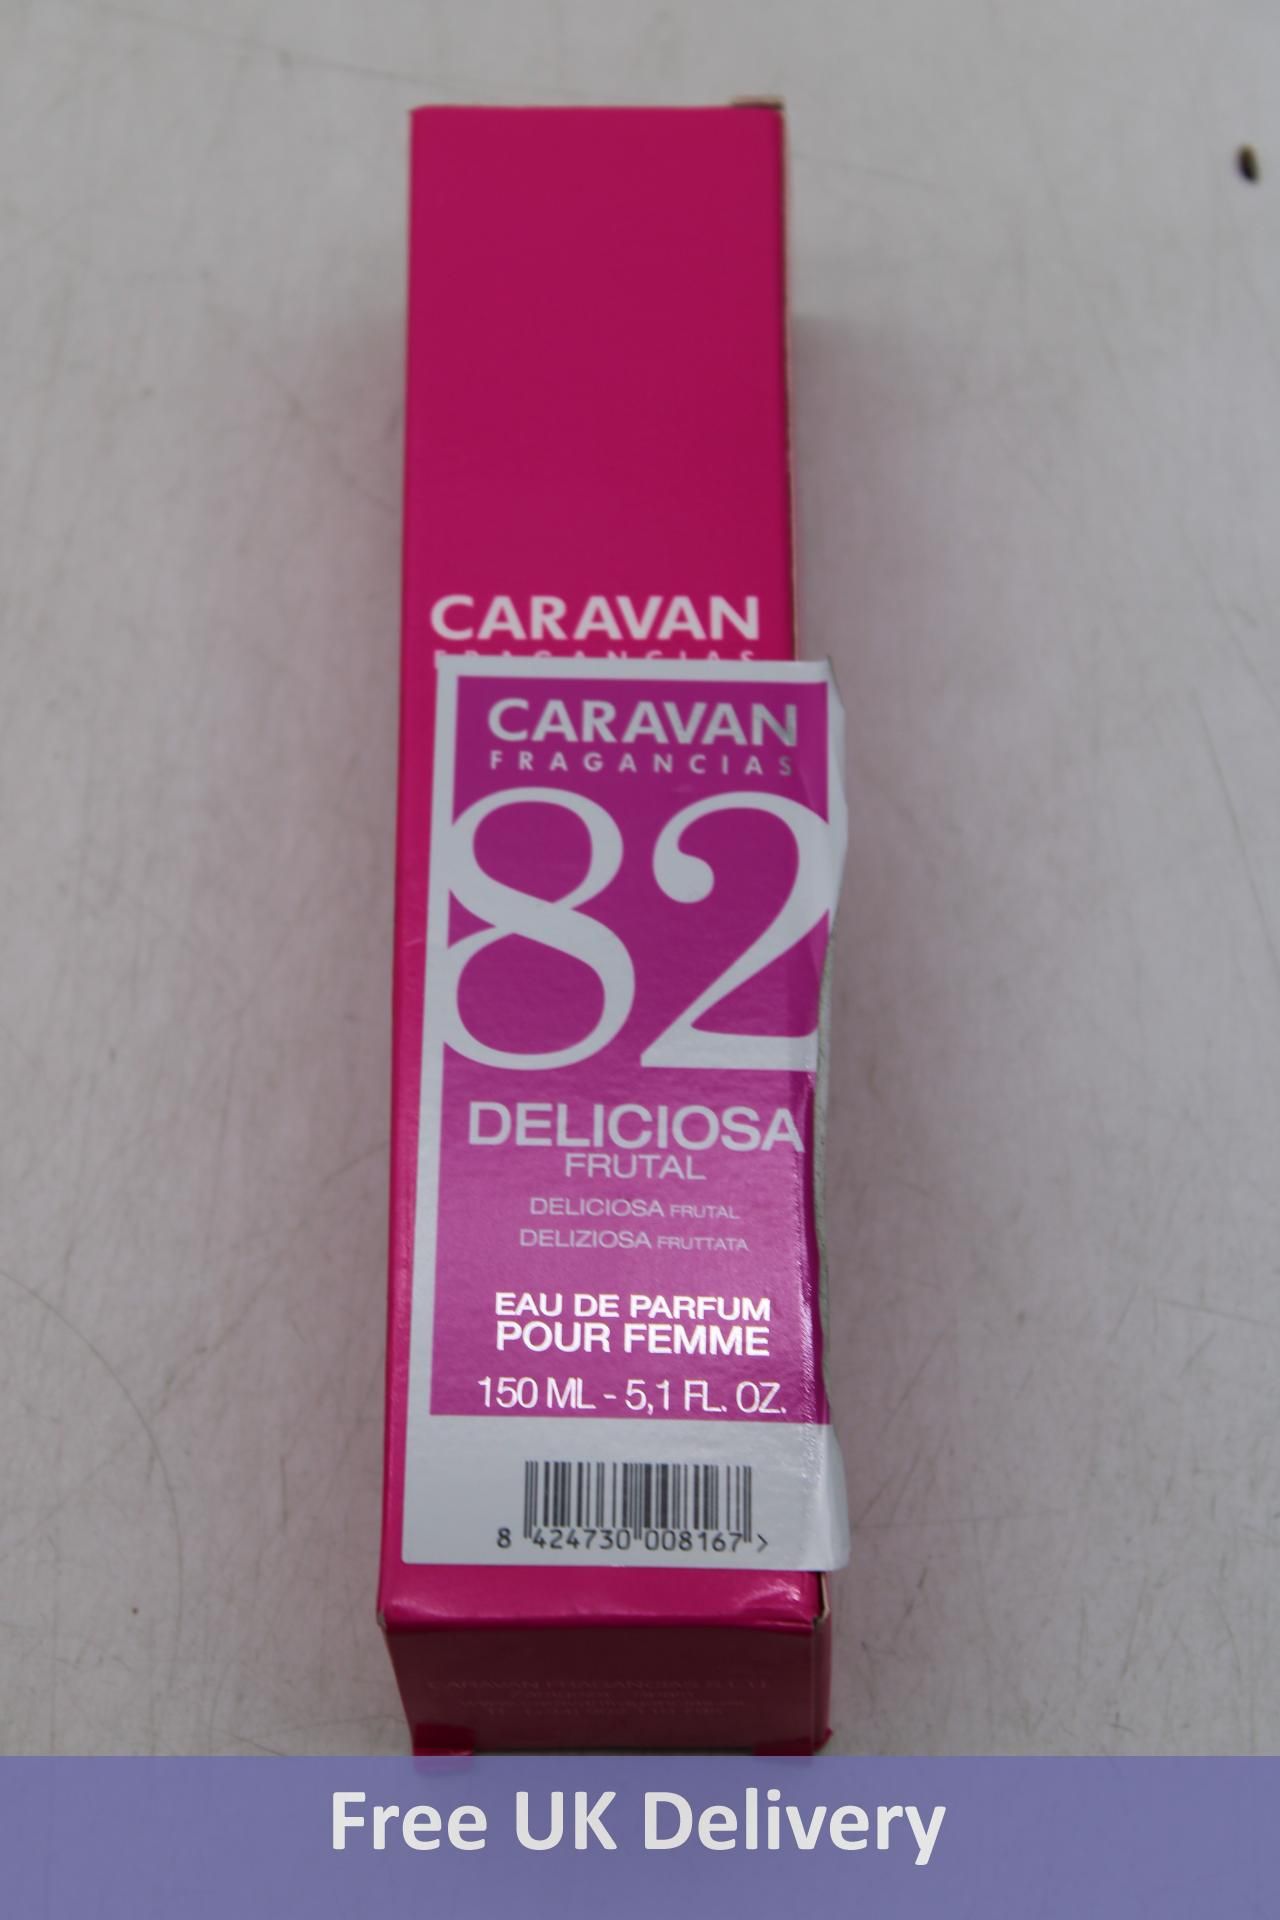 Nine Caravan Women's Eau de Perfume Sprays to include 1x C2 Natural Spray, 1x No 82 Delicious Frutal